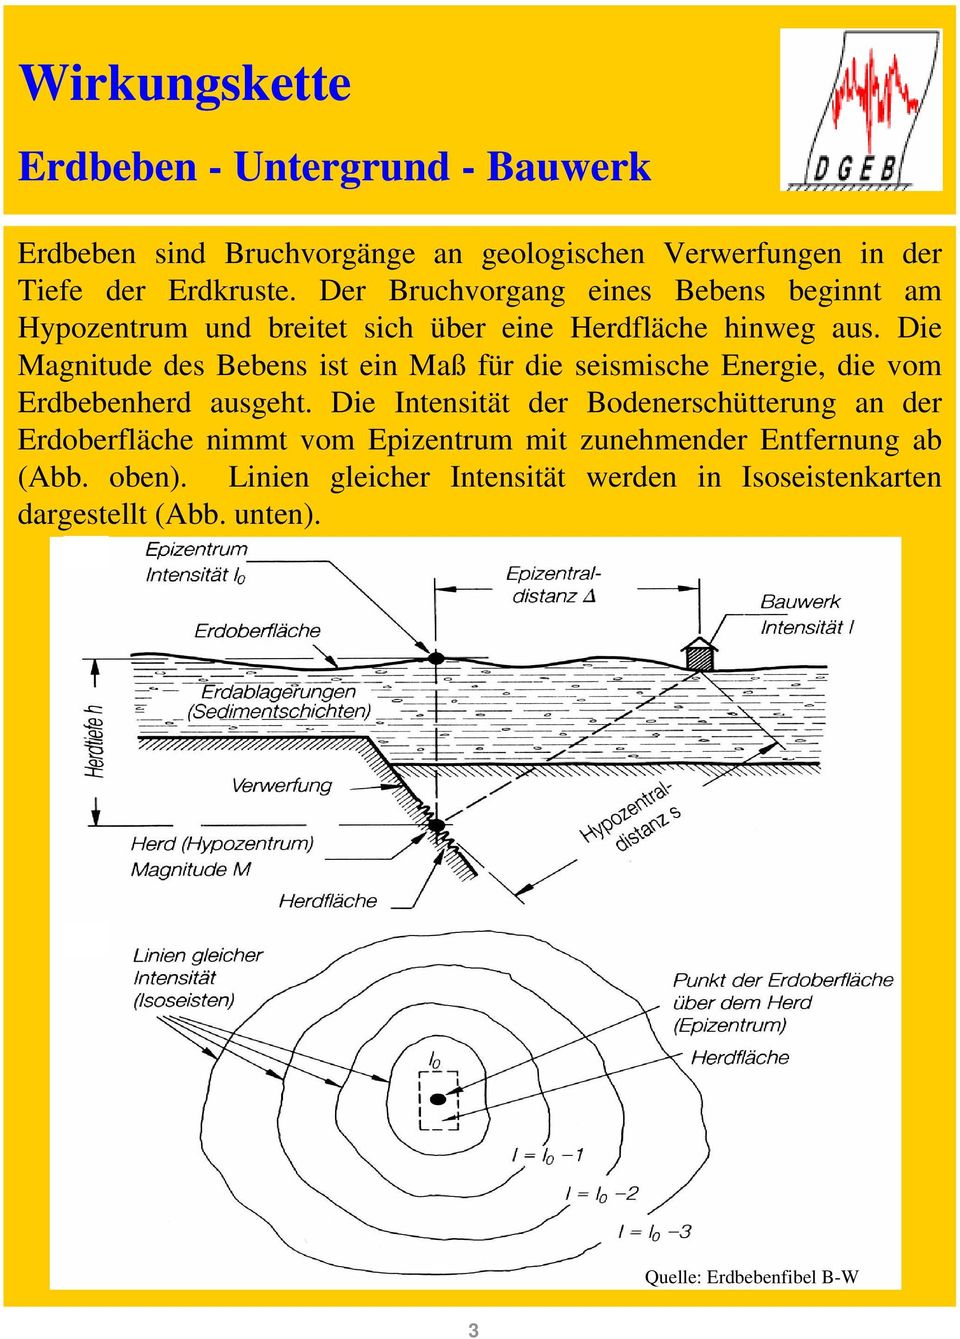 Die Magnitude des Bebens ist ein Maß für die seismische Energie, die vom Erdbebenherd ausgeht.